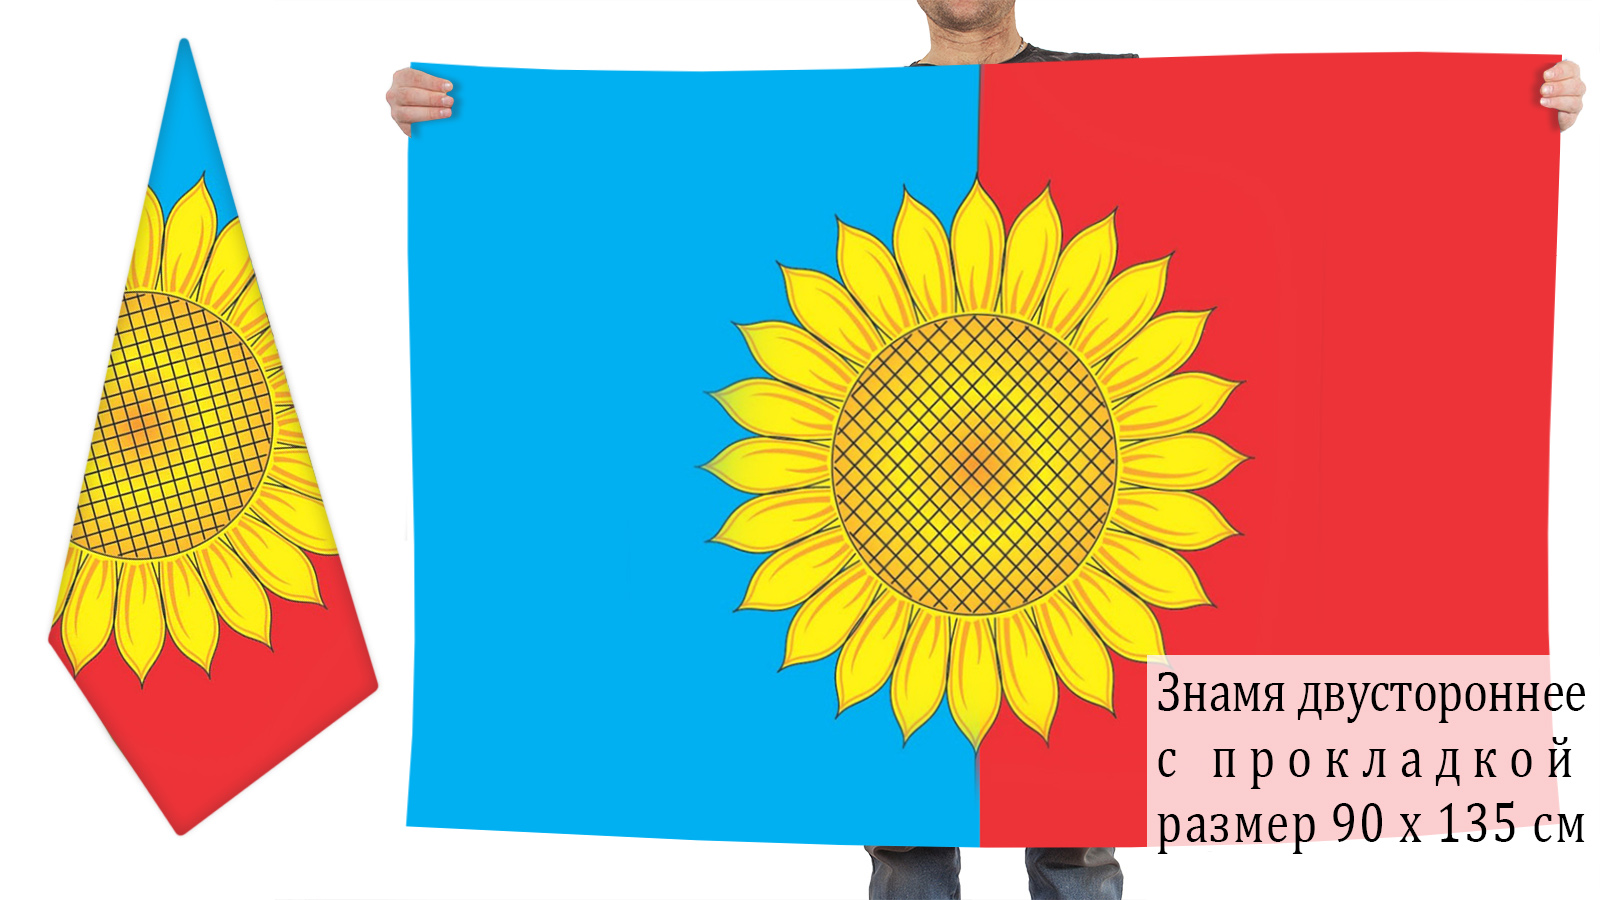  двусторонний флаг Кузоватовского района